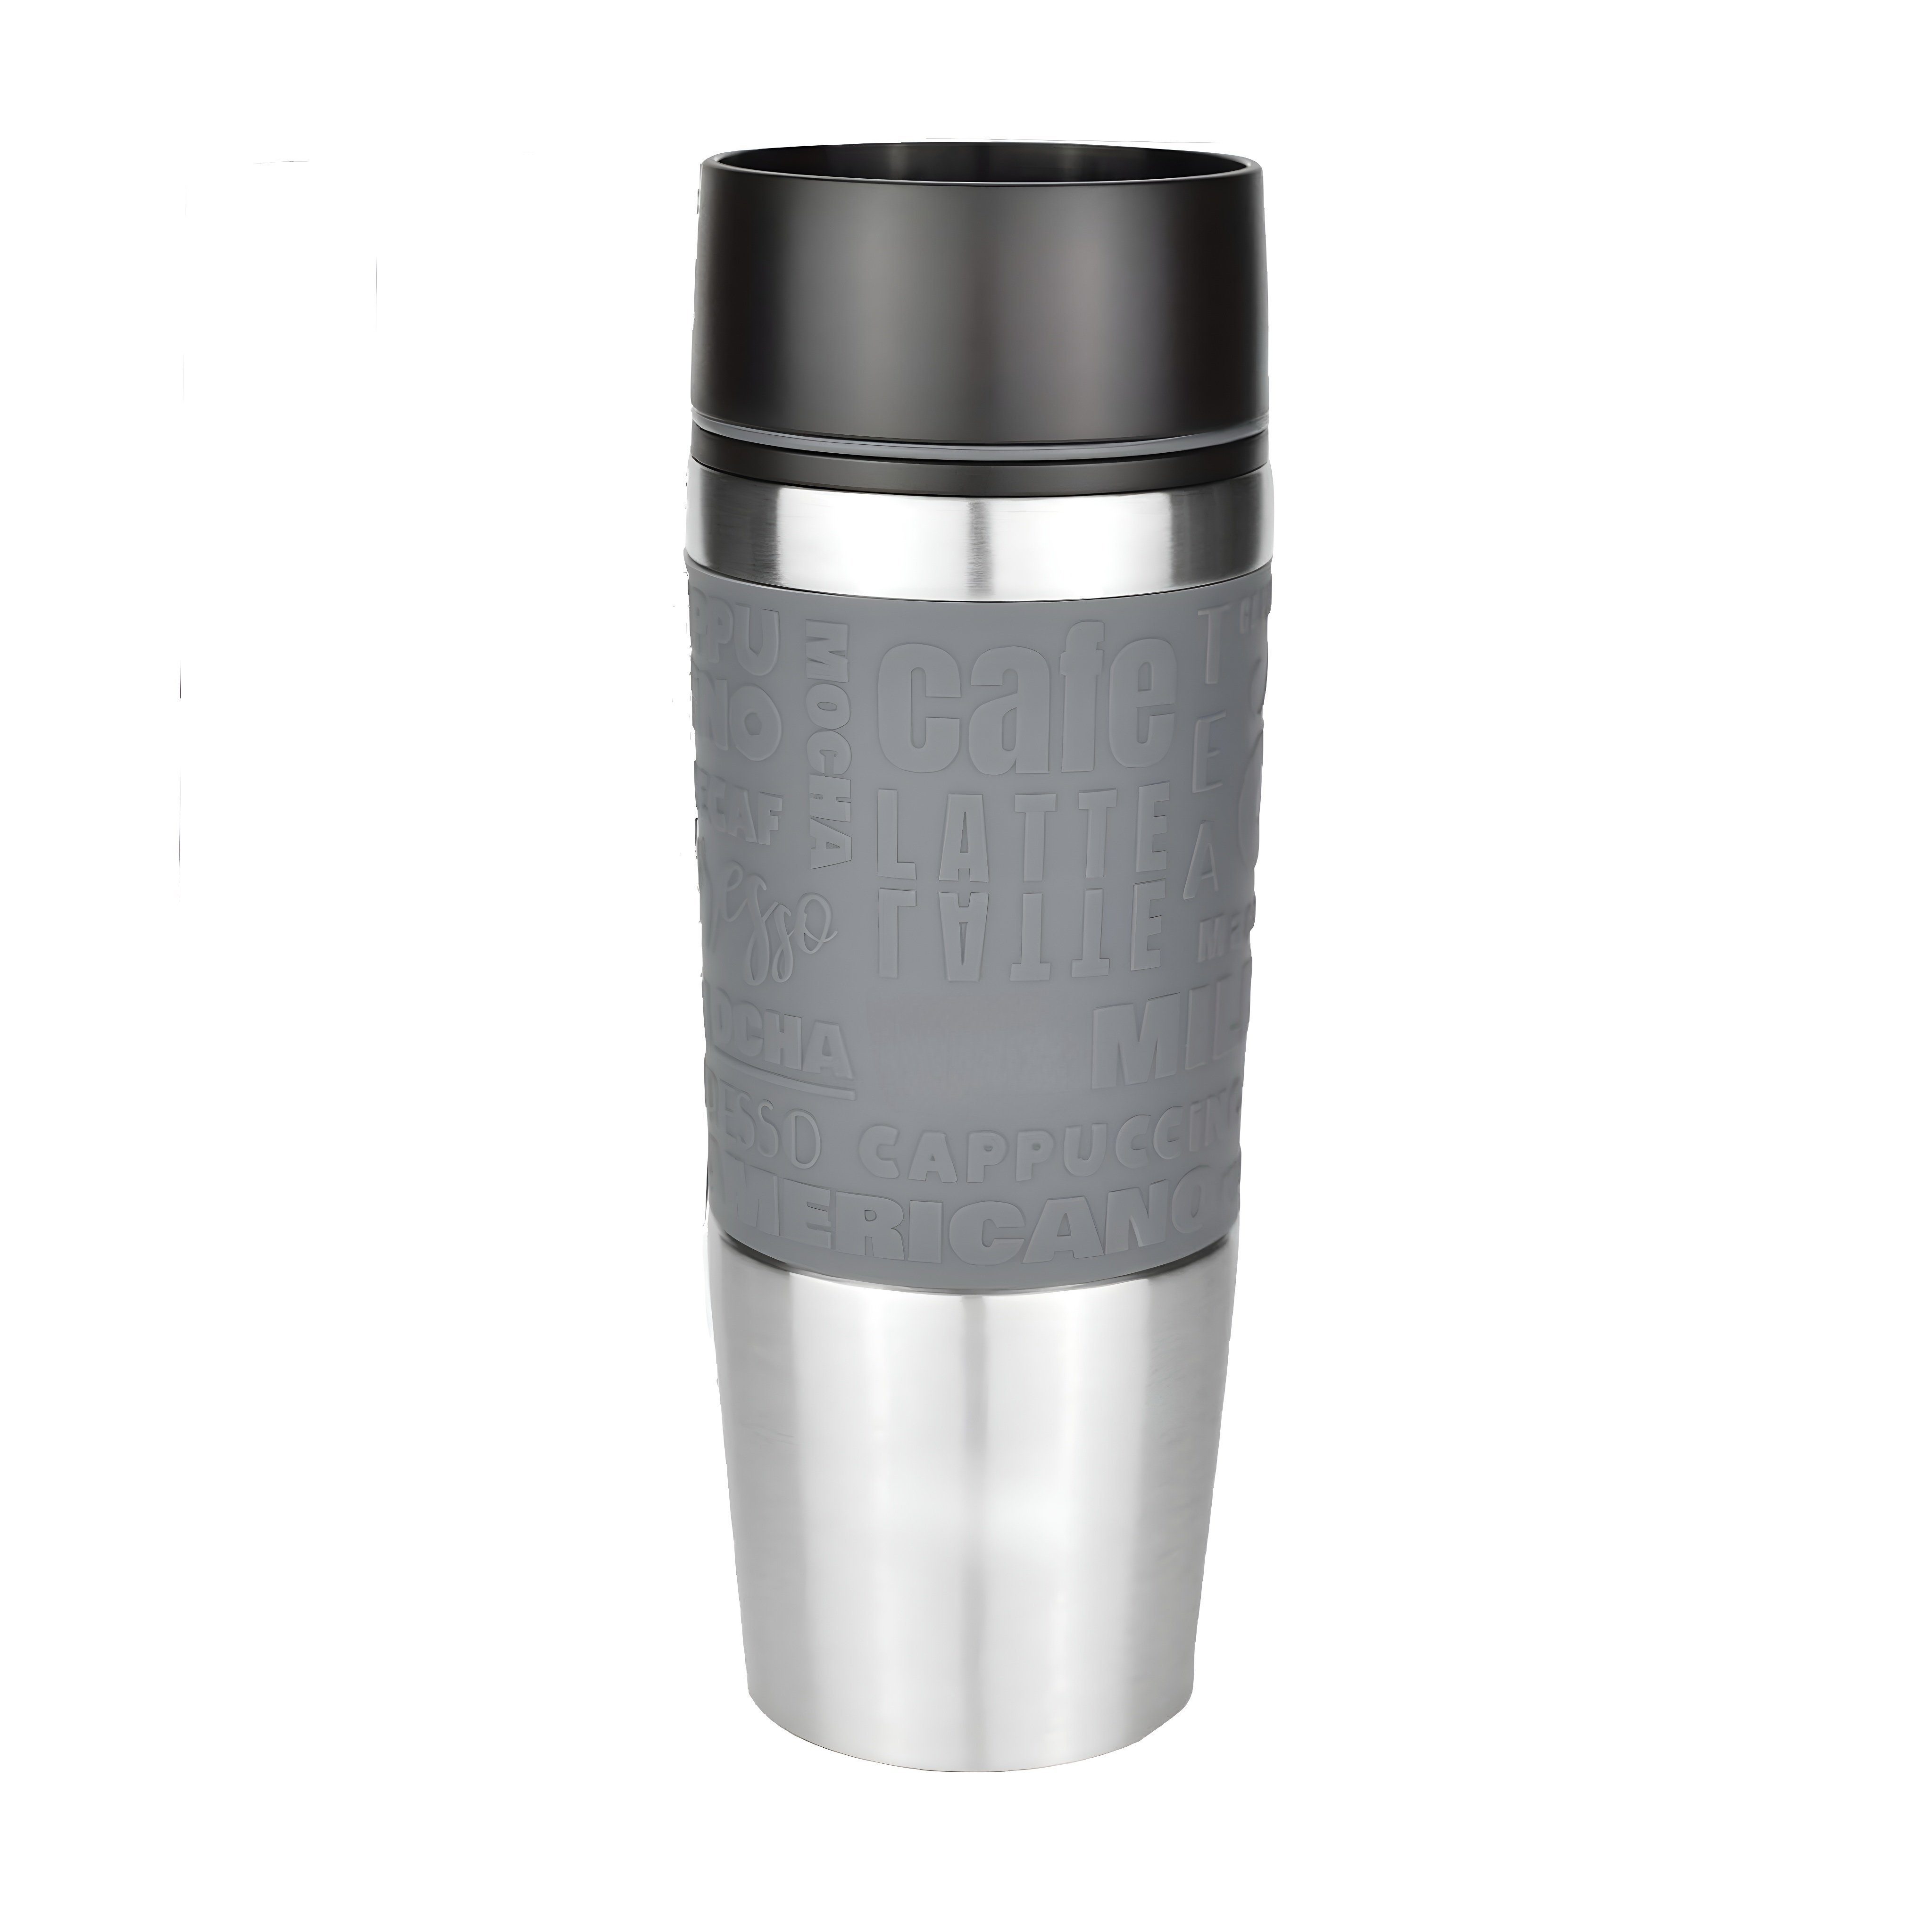 CULTZEN Thermobecher Thermo-Trinkbecher Isolierbecher Travel Mug Kaffeebecher Kaffee 360°, hochwertiger Edelstahl matt gebürstet, Kunststoff und Silikon, kalt Isolierter 100% dicht, Umweltfreundlich, Einhandbedienung